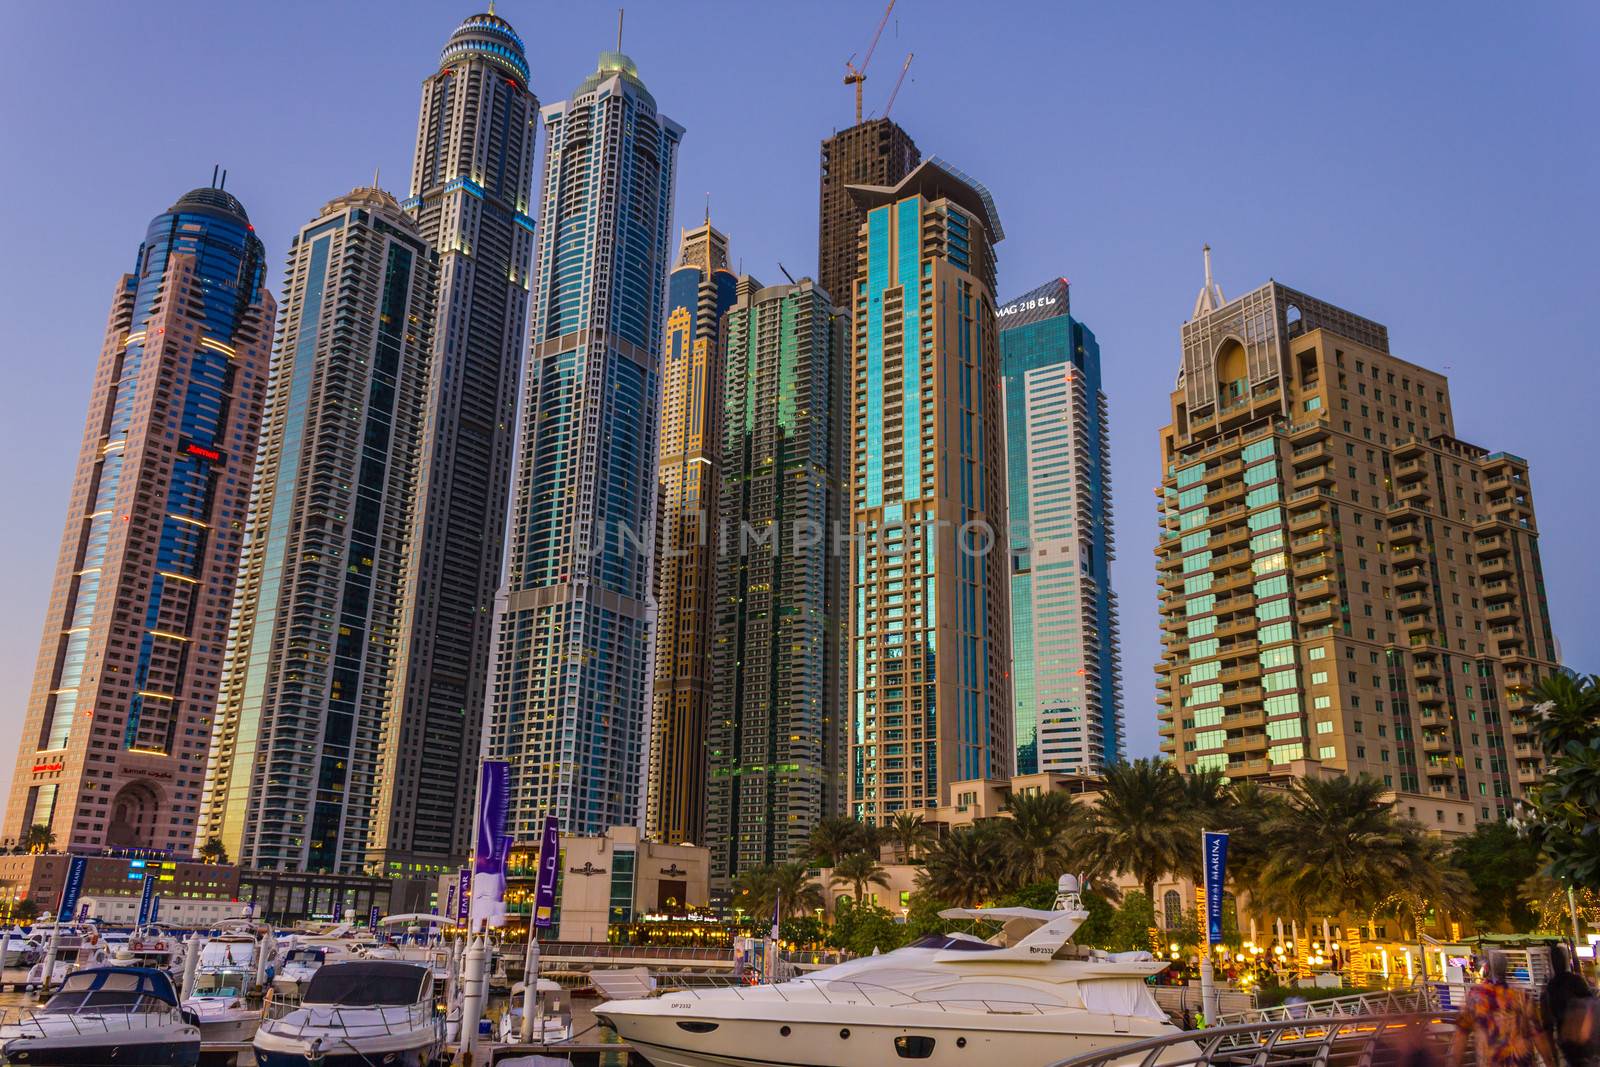 Nightlife in Dubai Marina. UAE. November 16, 2012 by oleg_zhukov